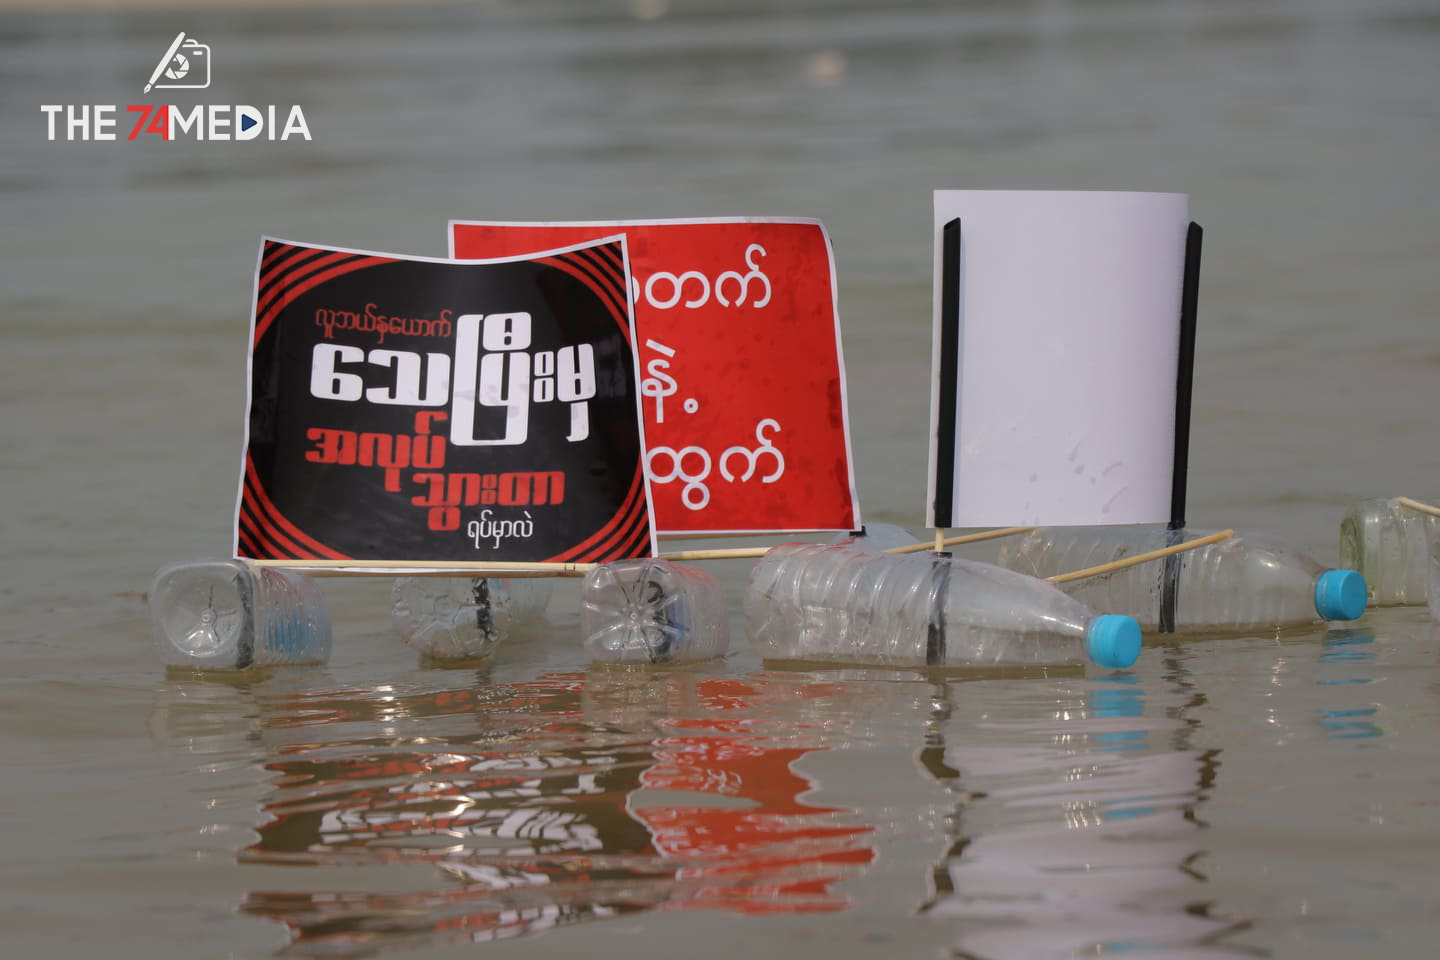 မြစ်ကြီးနားမြို့တွင် စစ်အာဏာရှင်ဆန့်ကျင်ရေး ရေမျှောသပိတ်ပြုလုပ်